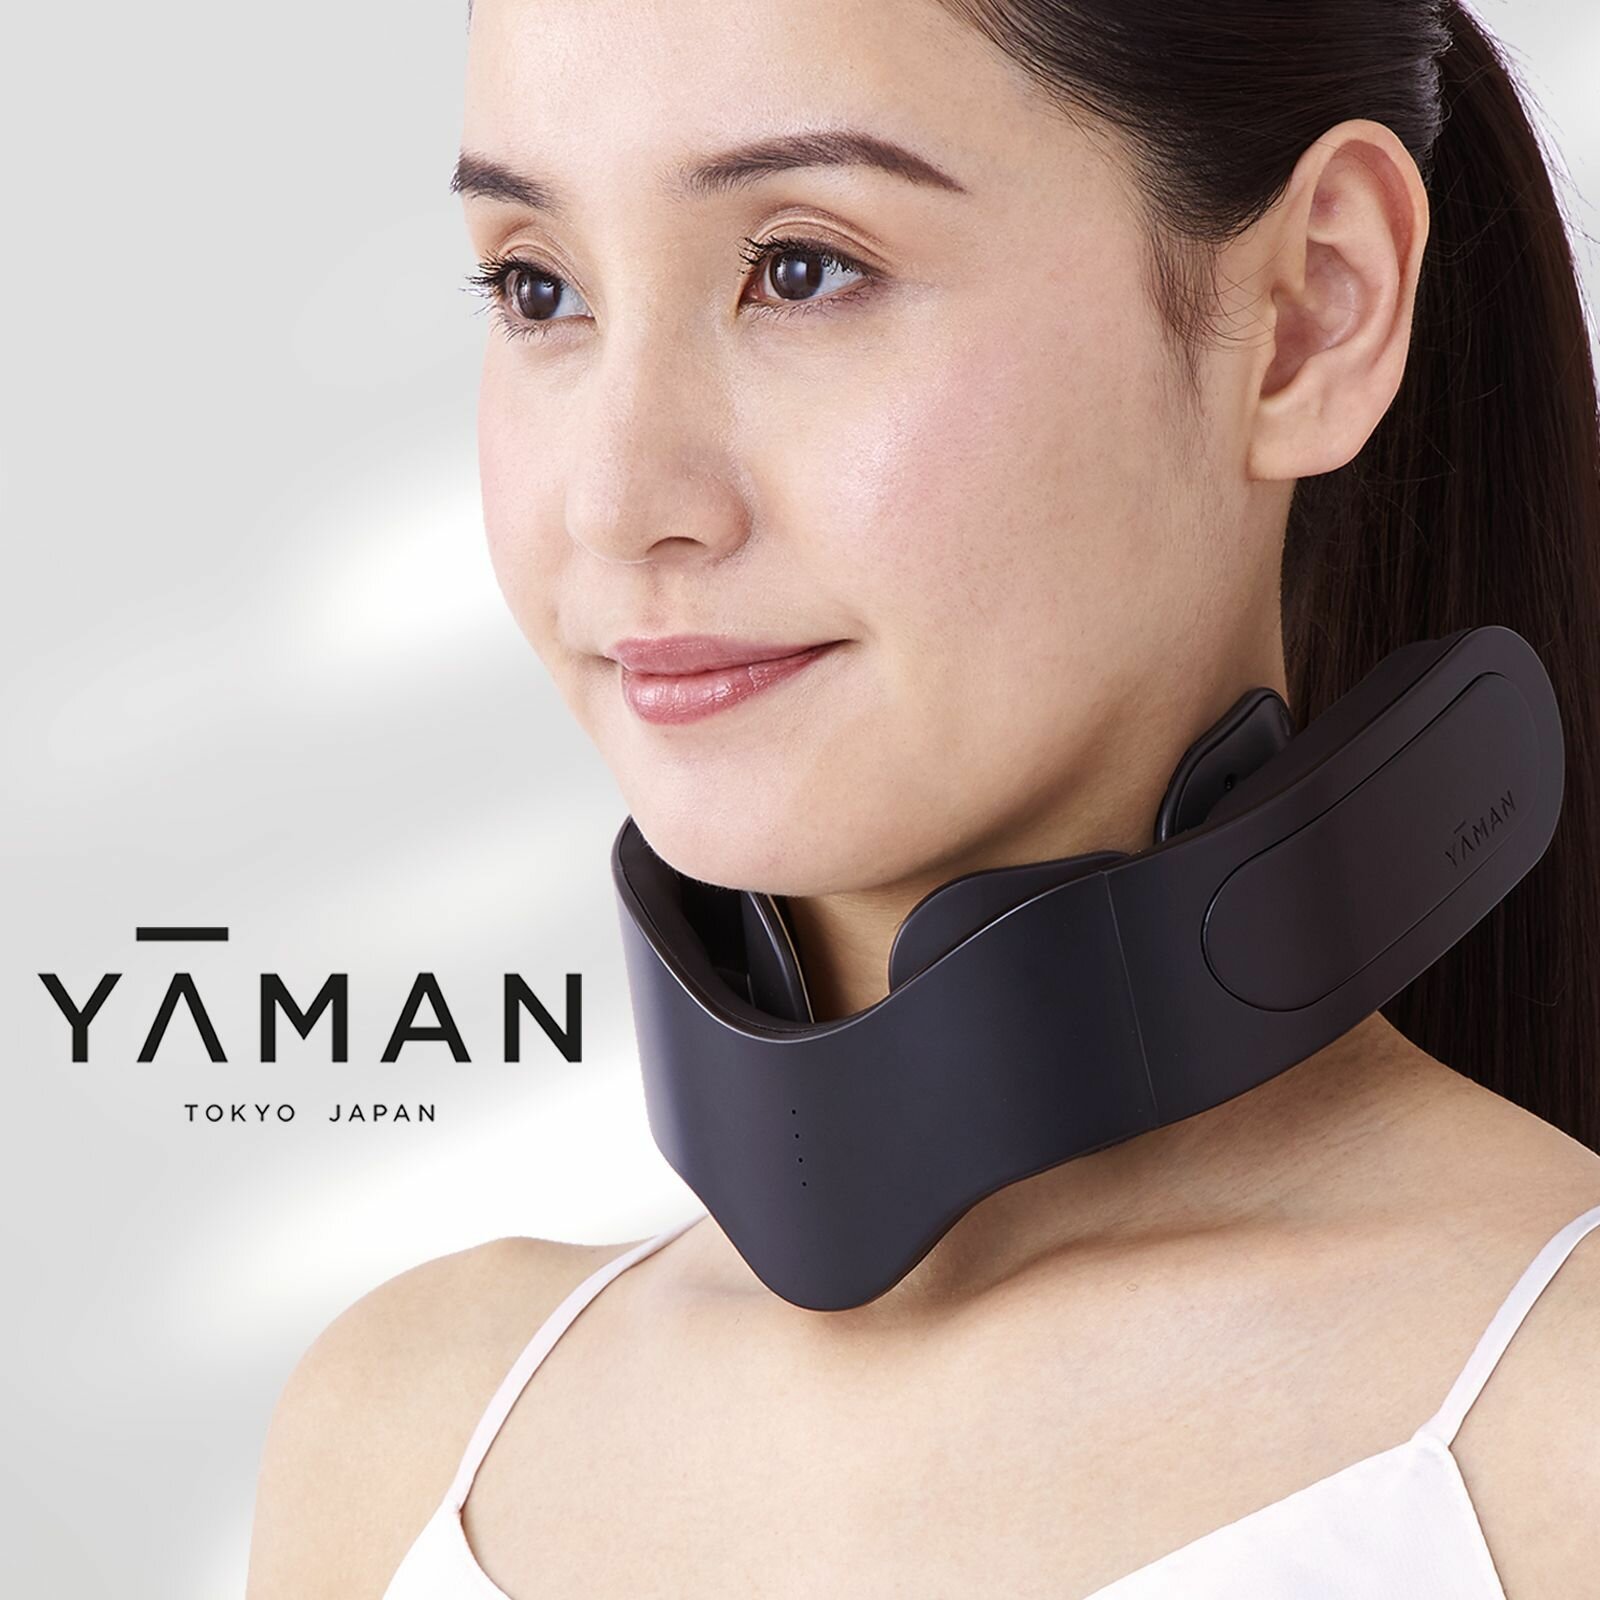 Электрический микротоковый EMS массажер для шеи YA-MAN Medilift Neck, Профессиональный косметологический аппарат для лифтинга и расслабления мышц шеи